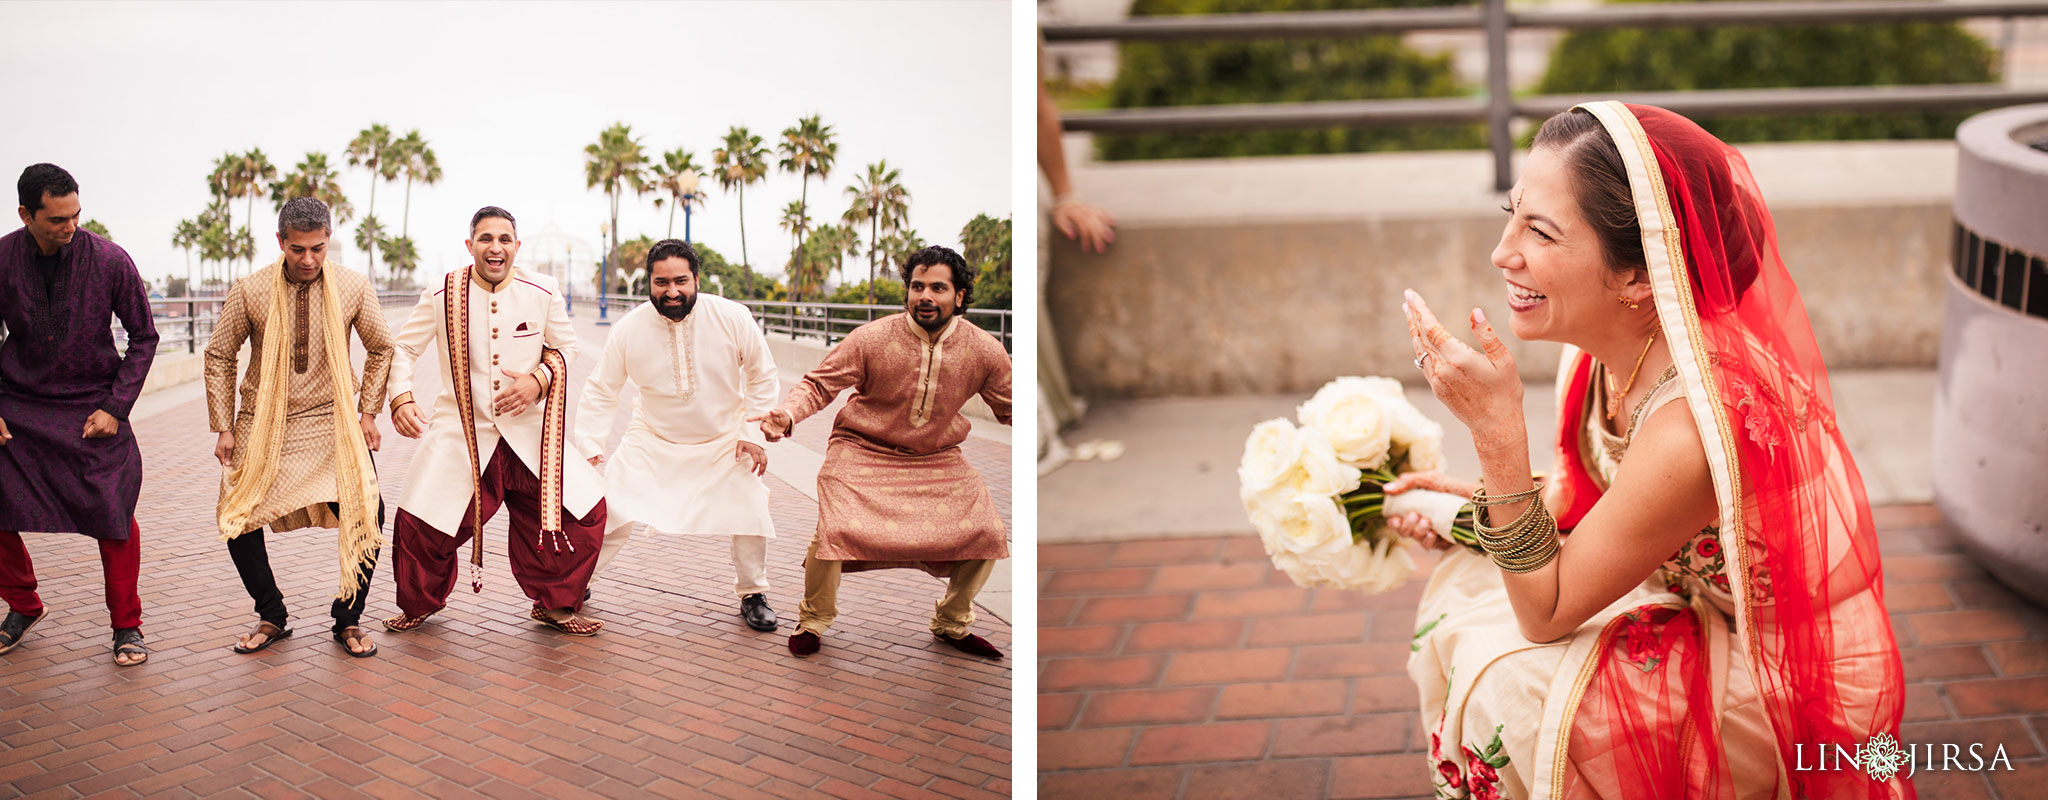 11 Hyatt Long Beach Indian Wedding Photography